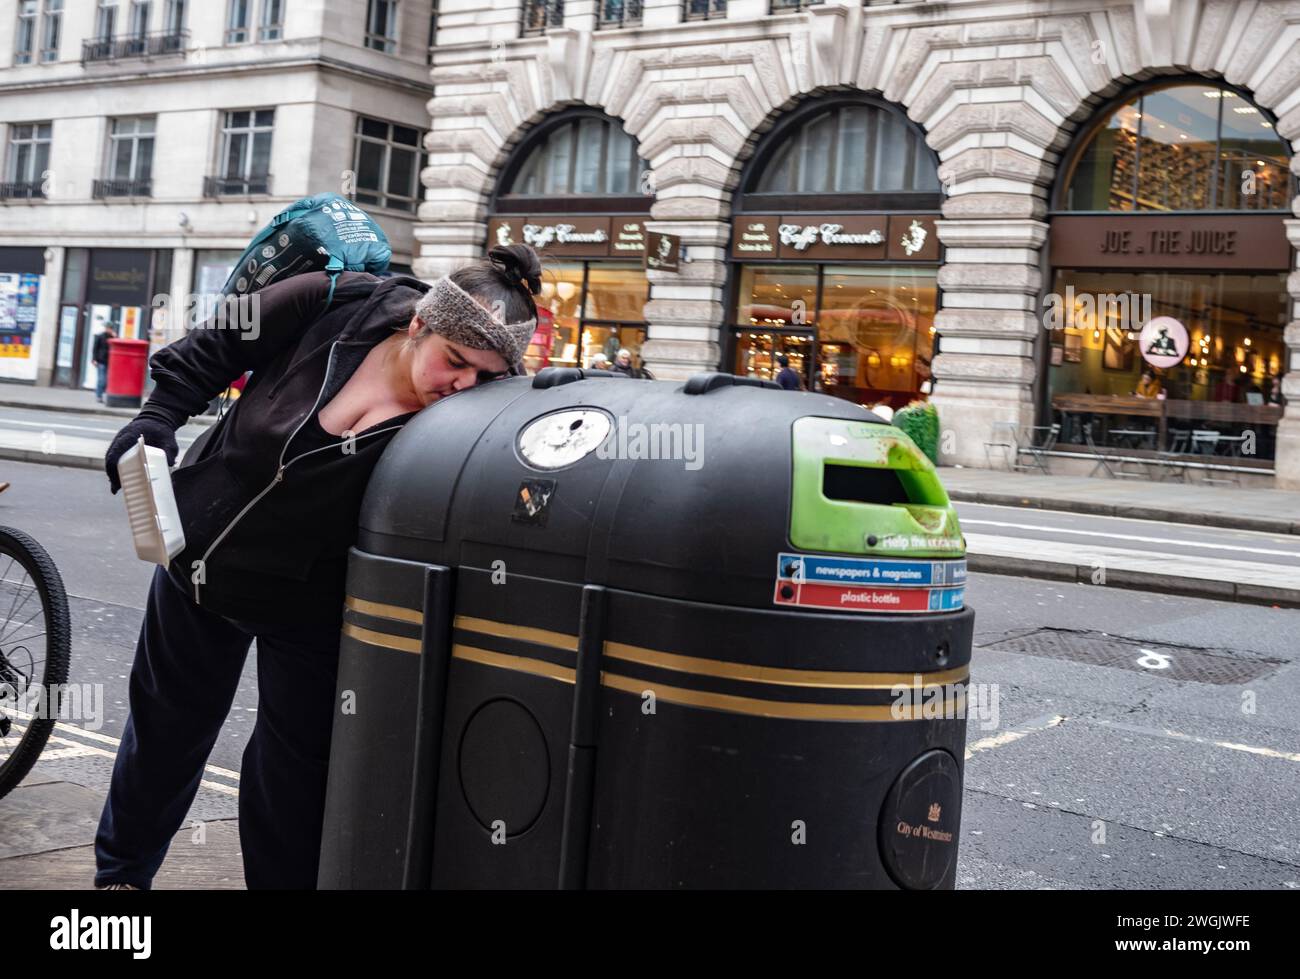 Personne sans-abri «bac plongeant» pour leurs jours de nourriture à l'intérieur d'un bac de recyclage public situé sur le trottoir le long de Piccadilly, Mayfair, Londres, Angleterre, Royaume-Uni Banque D'Images